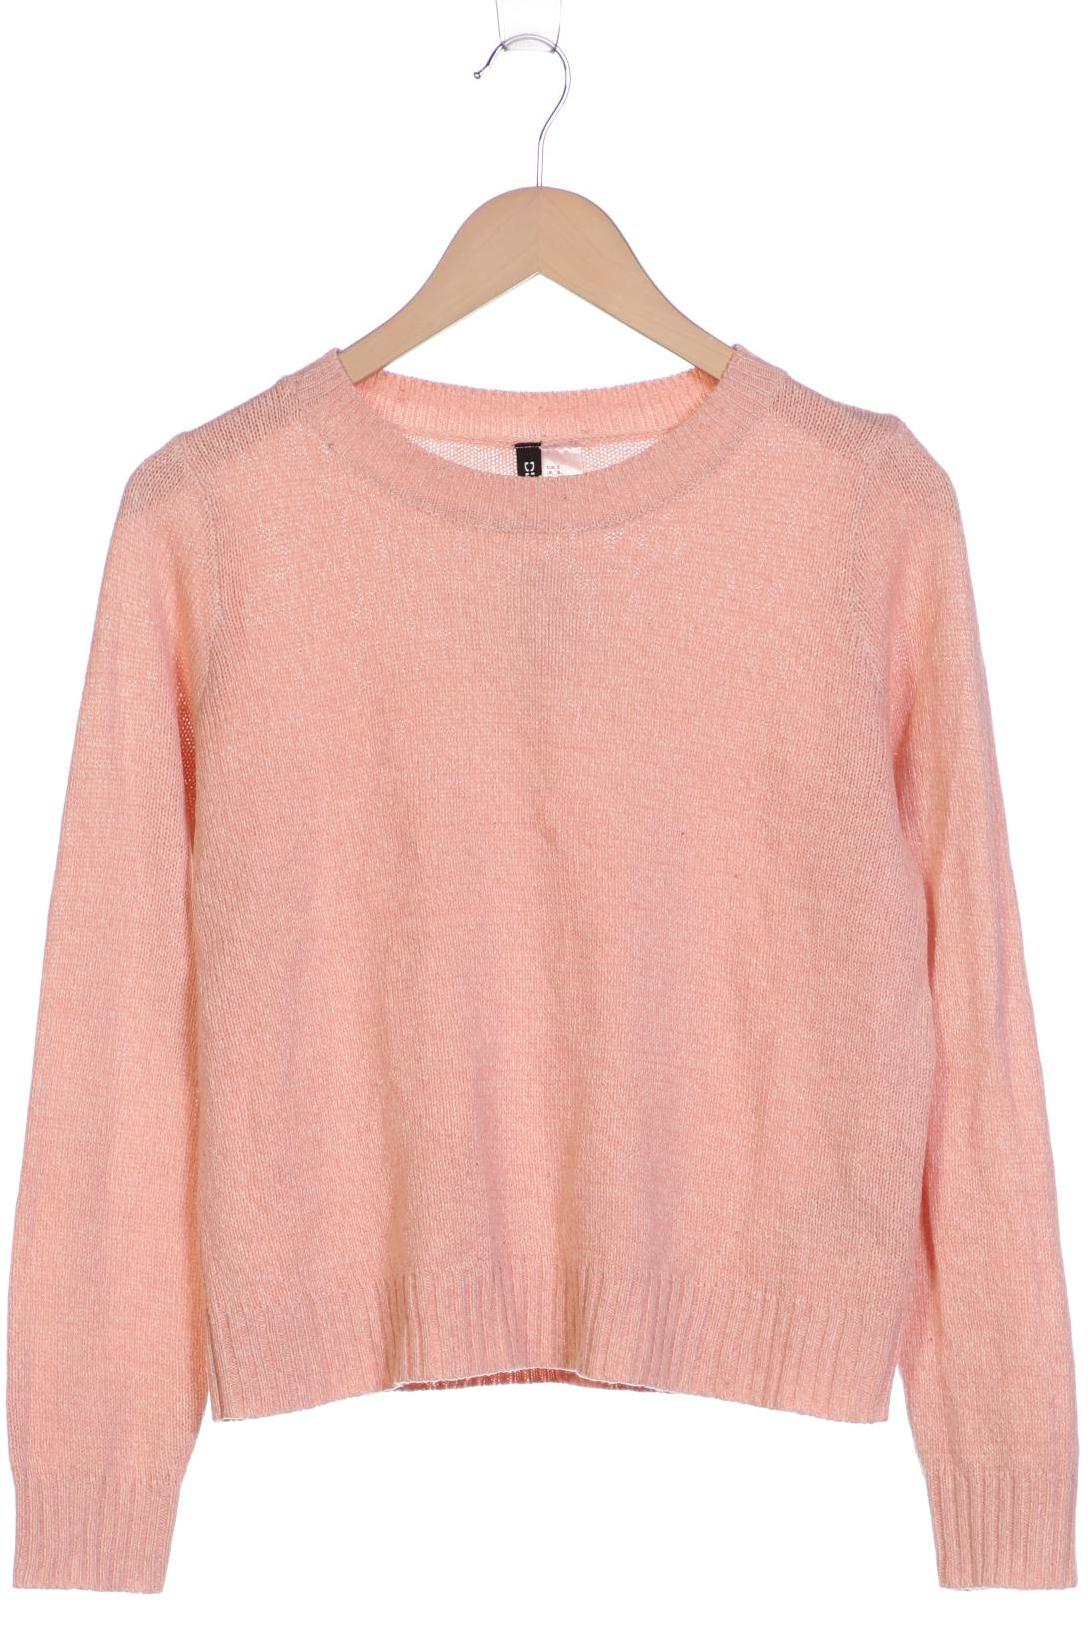 H&M Damen Pullover, pink, Gr. 36 von H&M